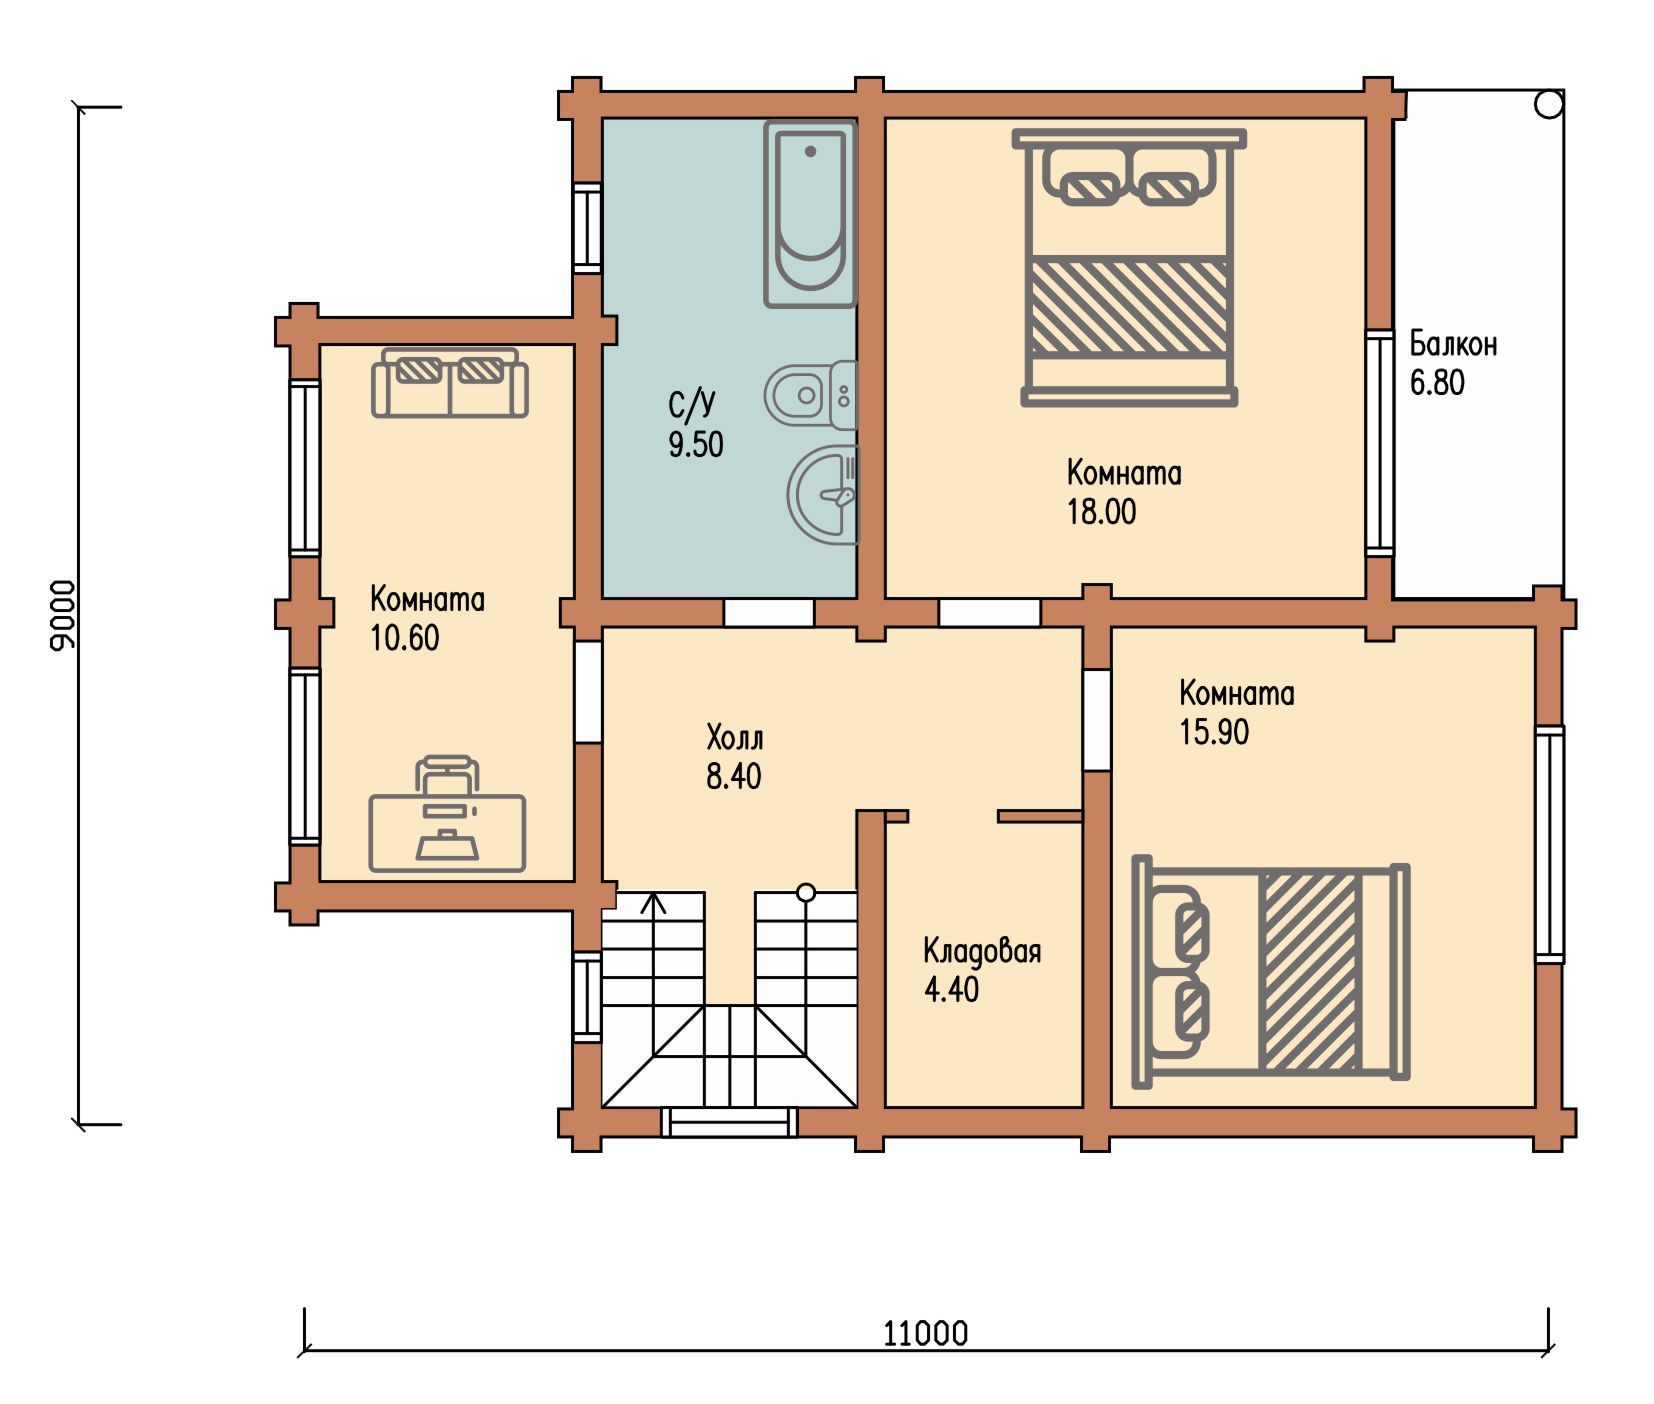 Проект одноэтажного деревянного  дома с мансардой и террасой  из бревна — ДДС 510